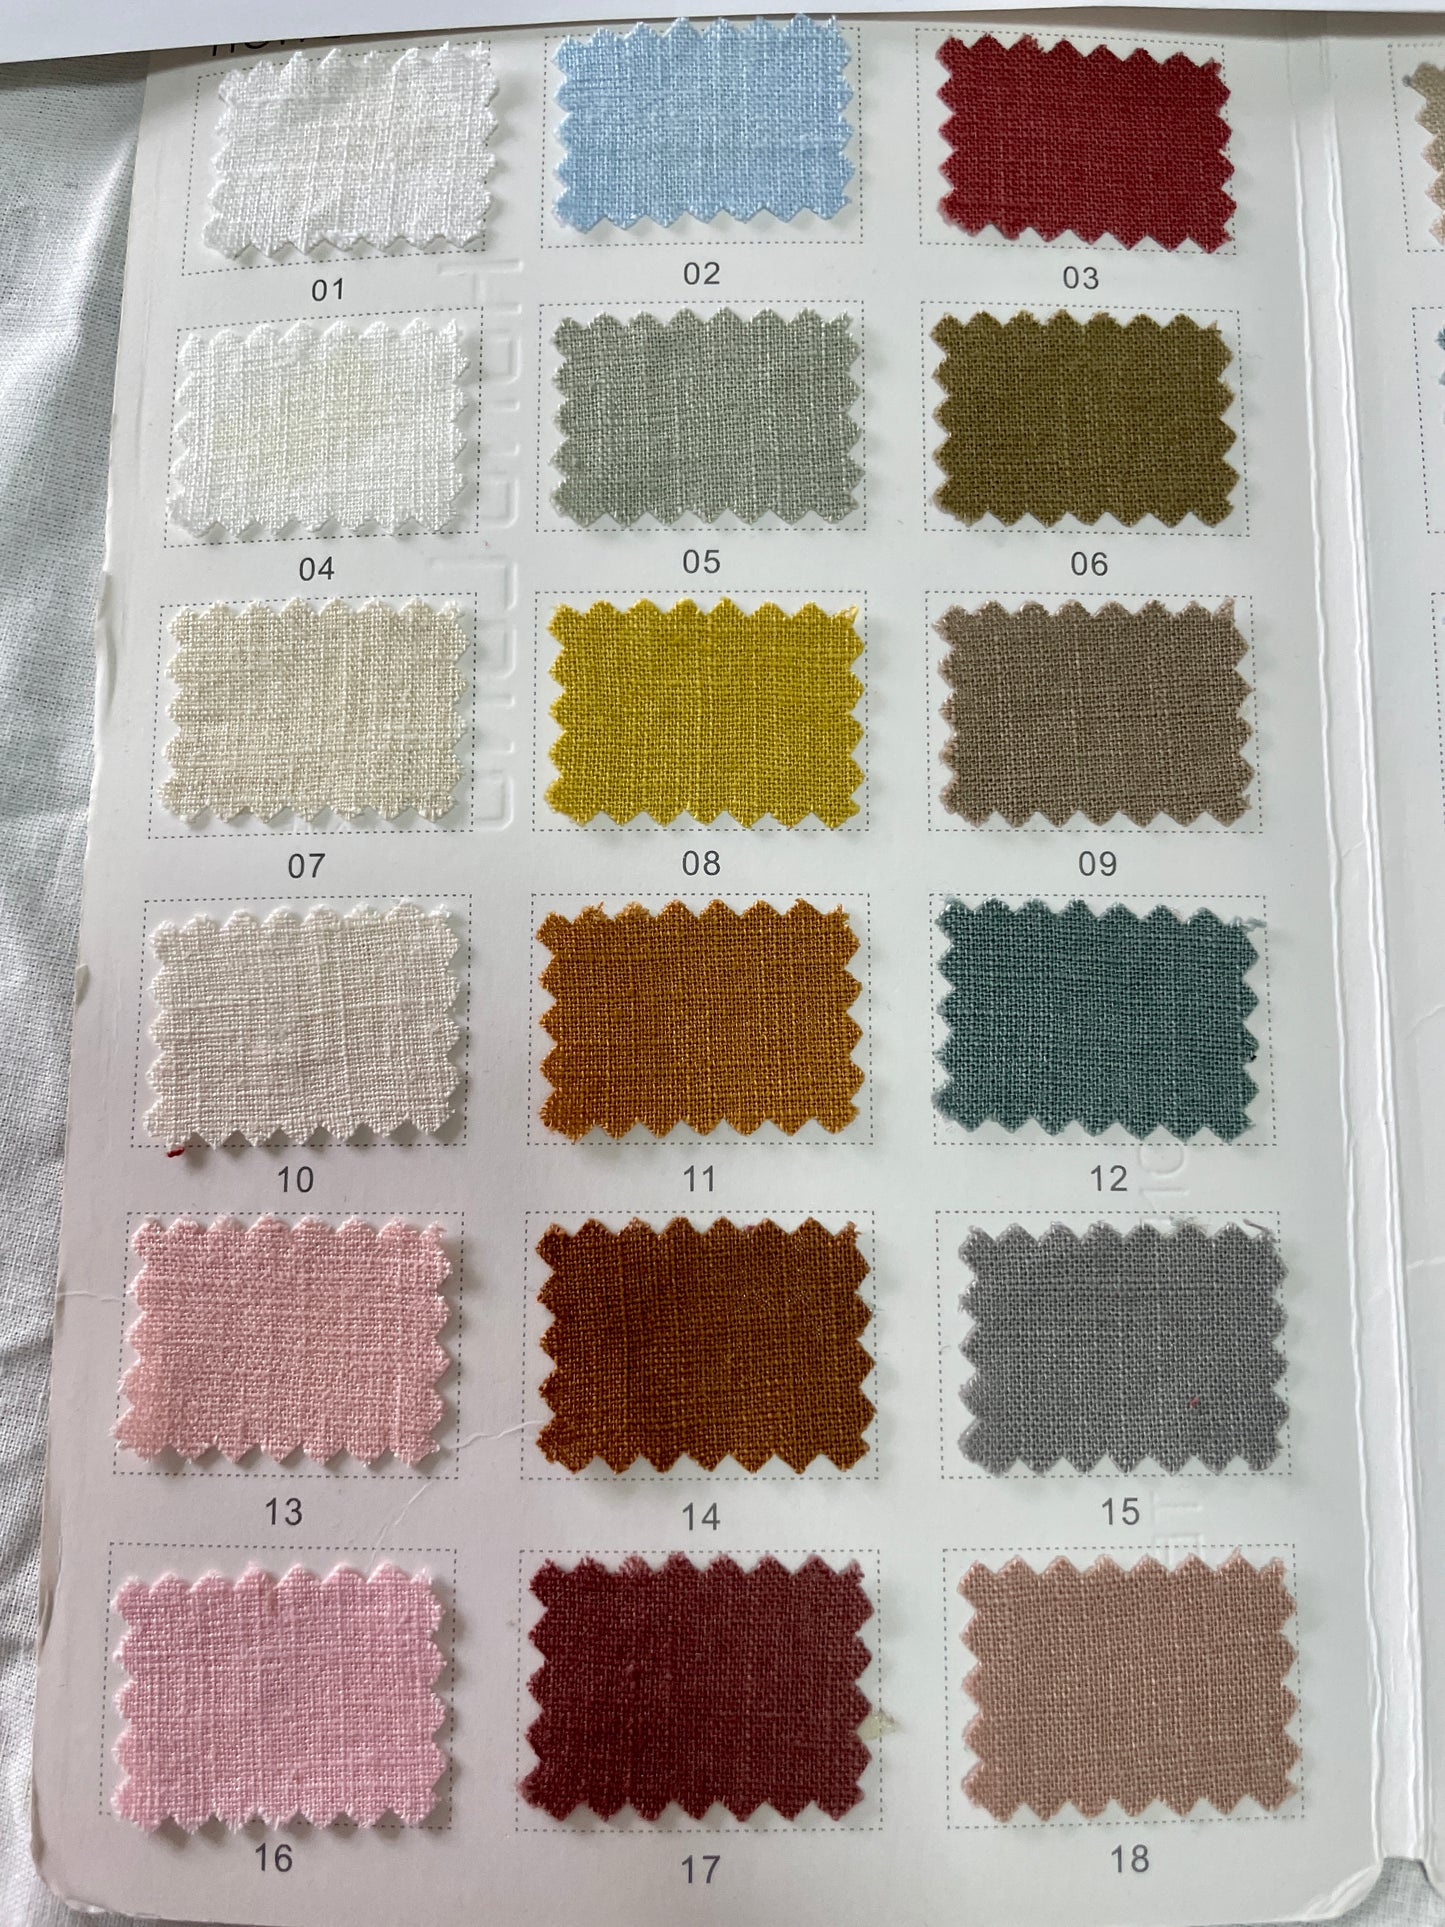 190g Washed Linen Cotton Blended Fabric - Natasha Fabric